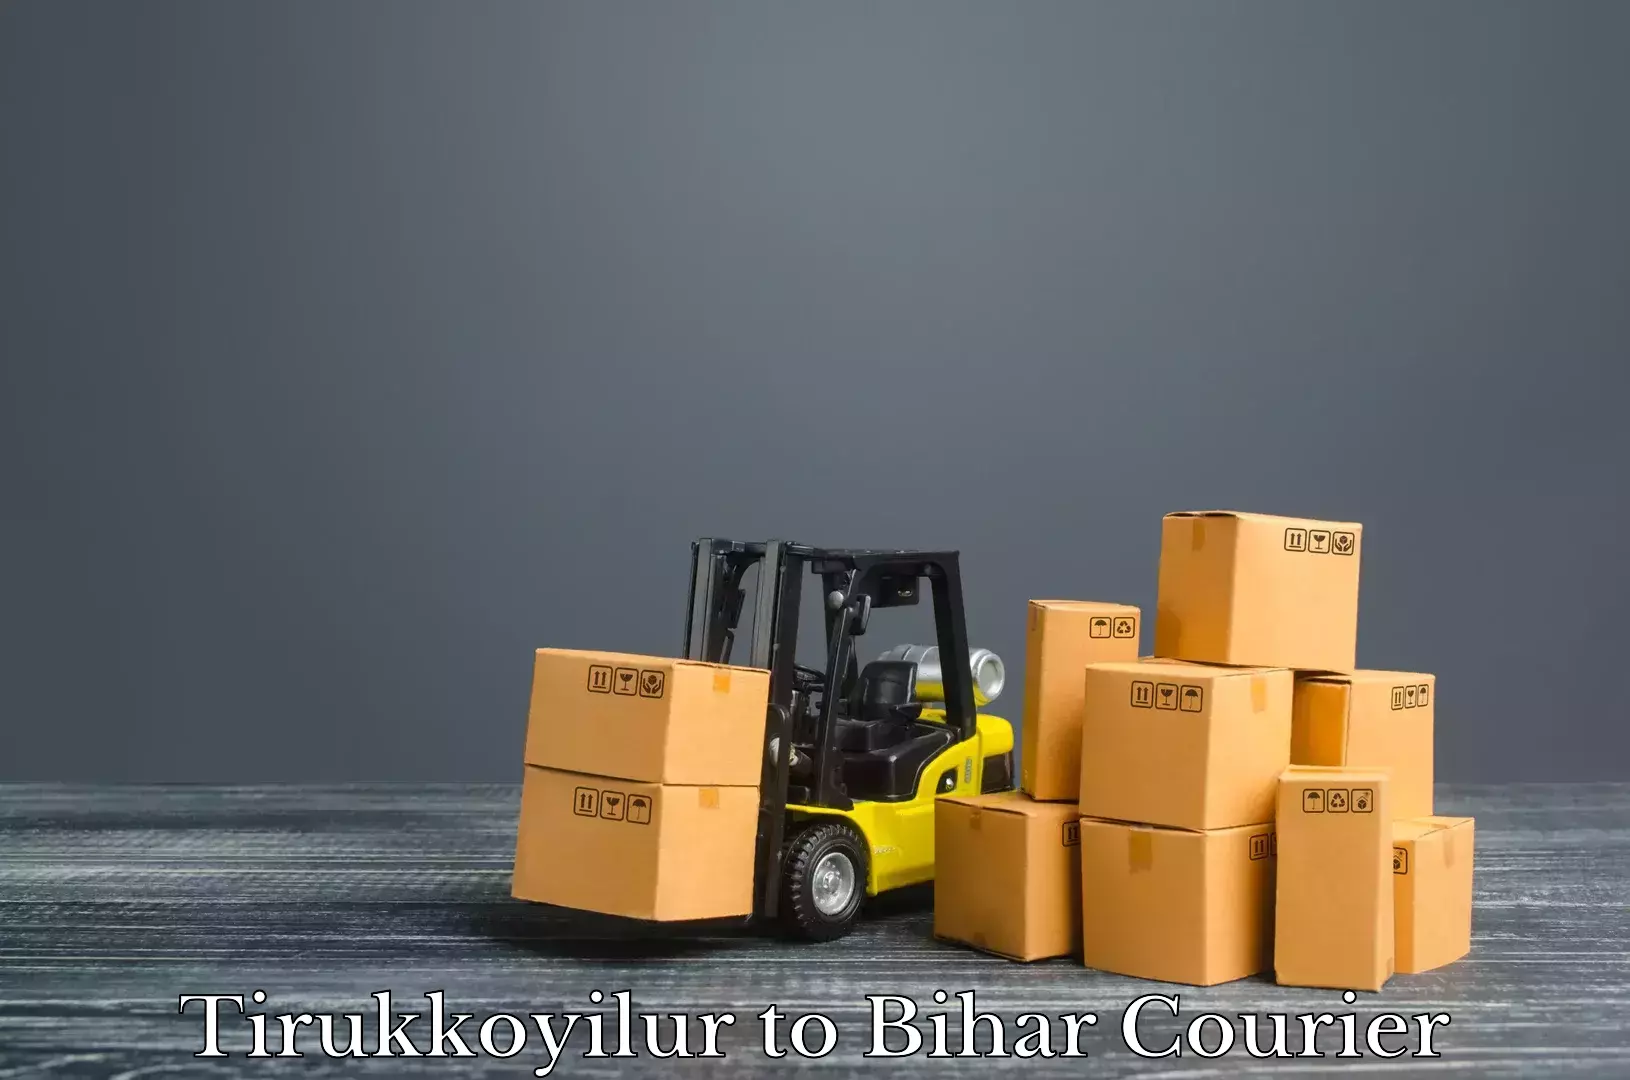 Baggage transport logistics Tirukkoyilur to Bihar